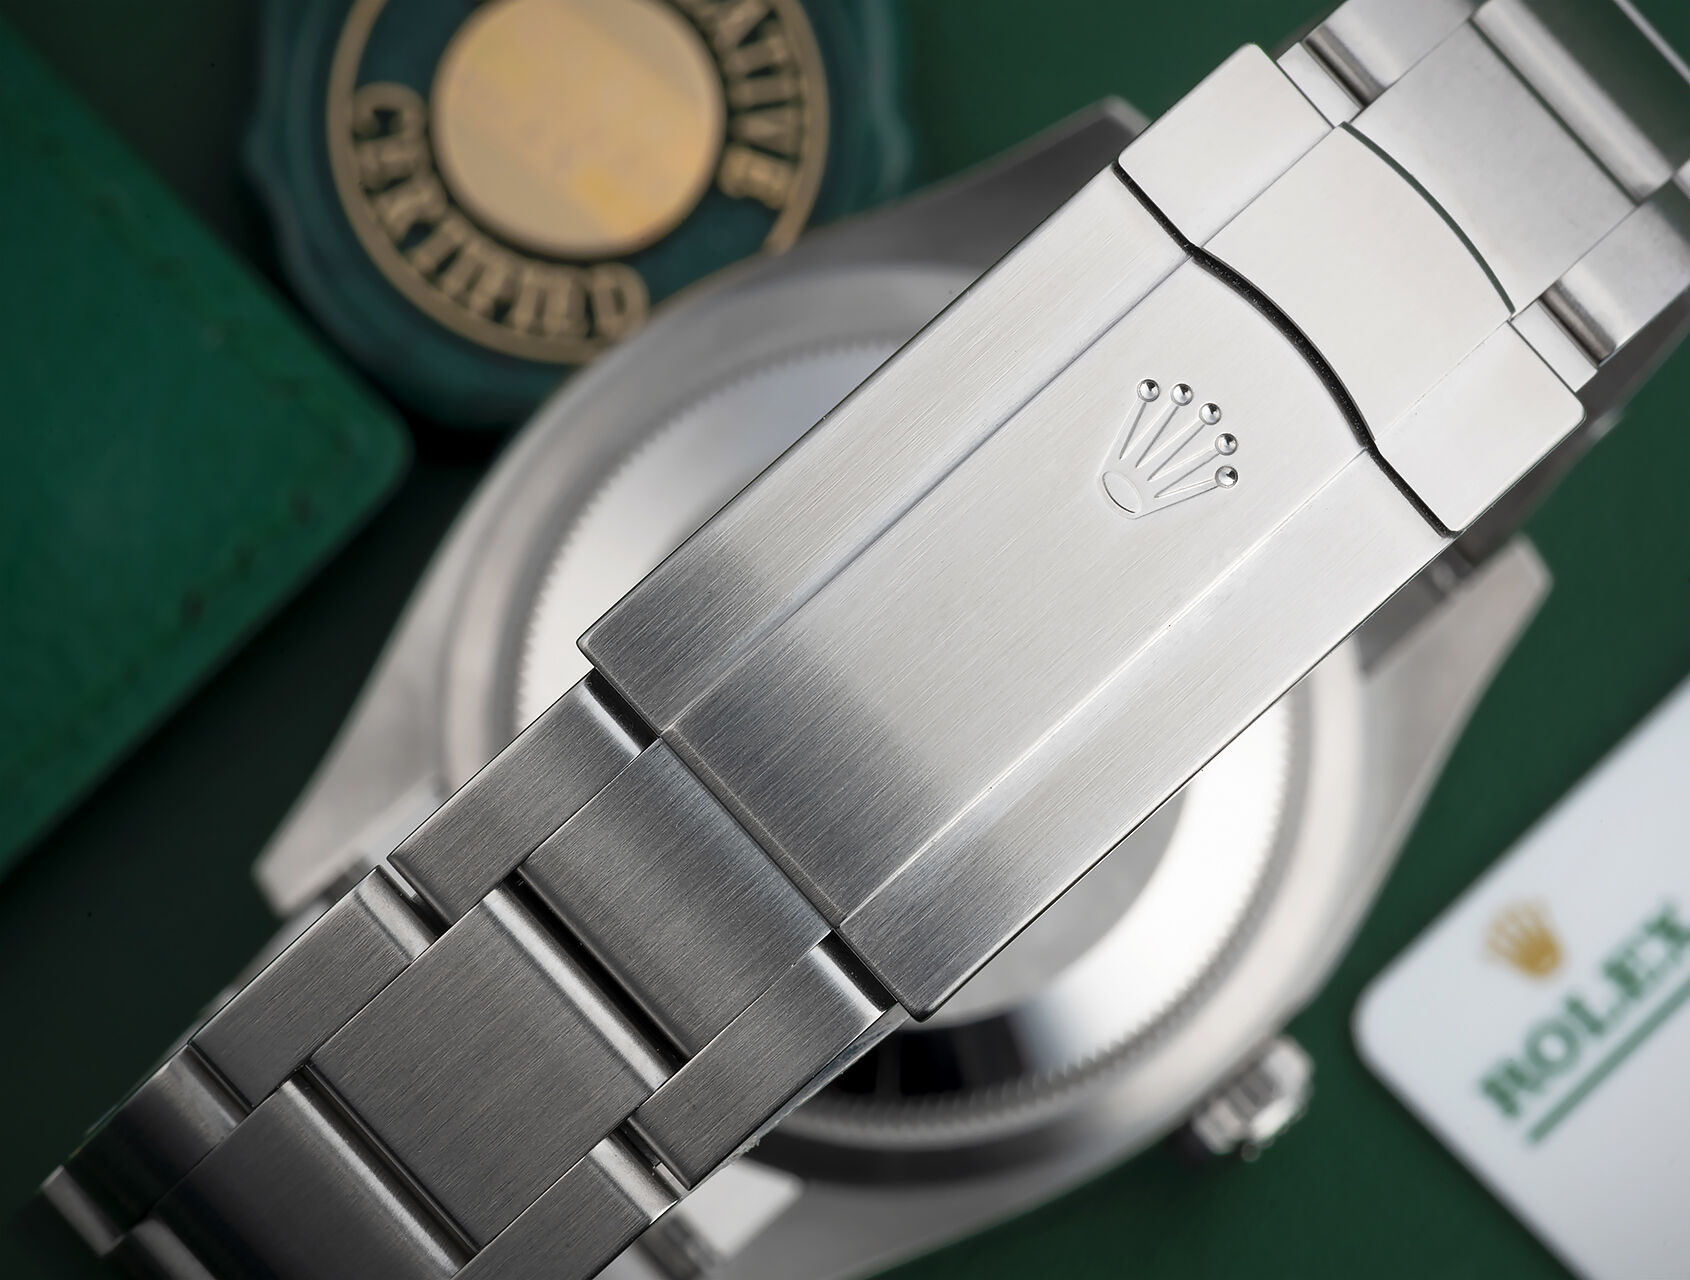 ref 126000 | 126000 - 5 Year Rolex Warranty | Rolex Oyster Perpetual